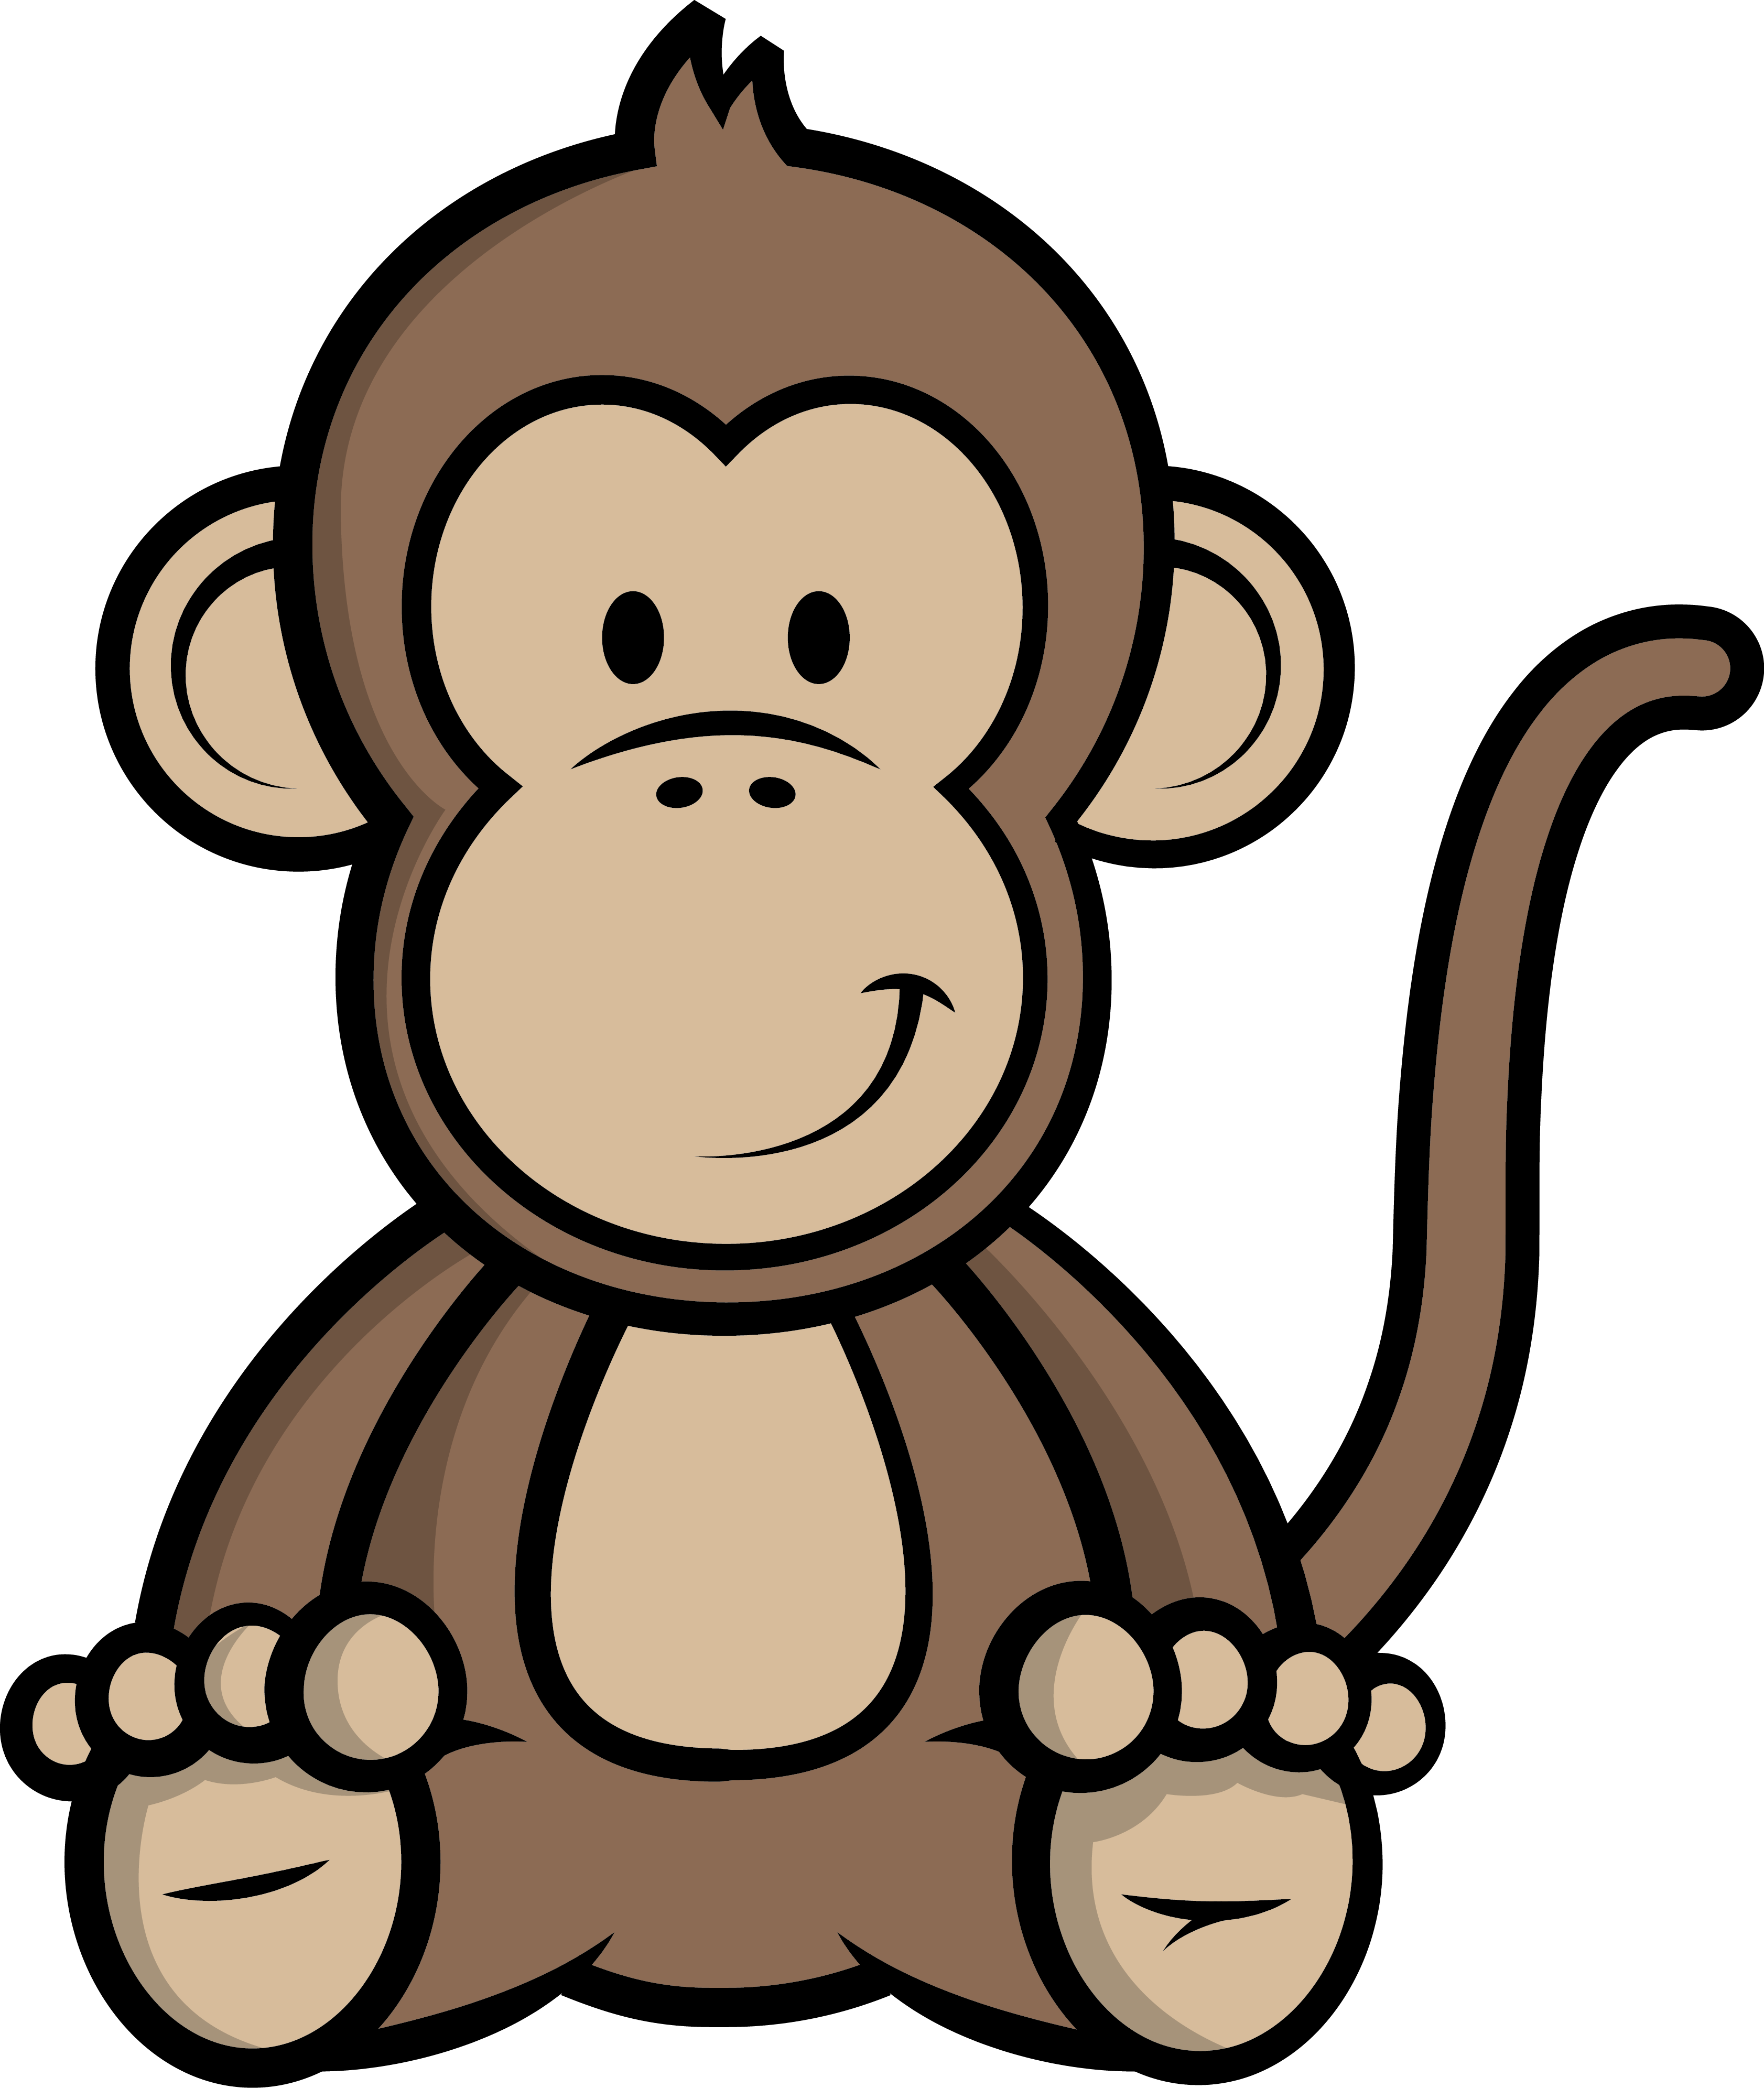 Image - Chimpanzee (3365x3983)